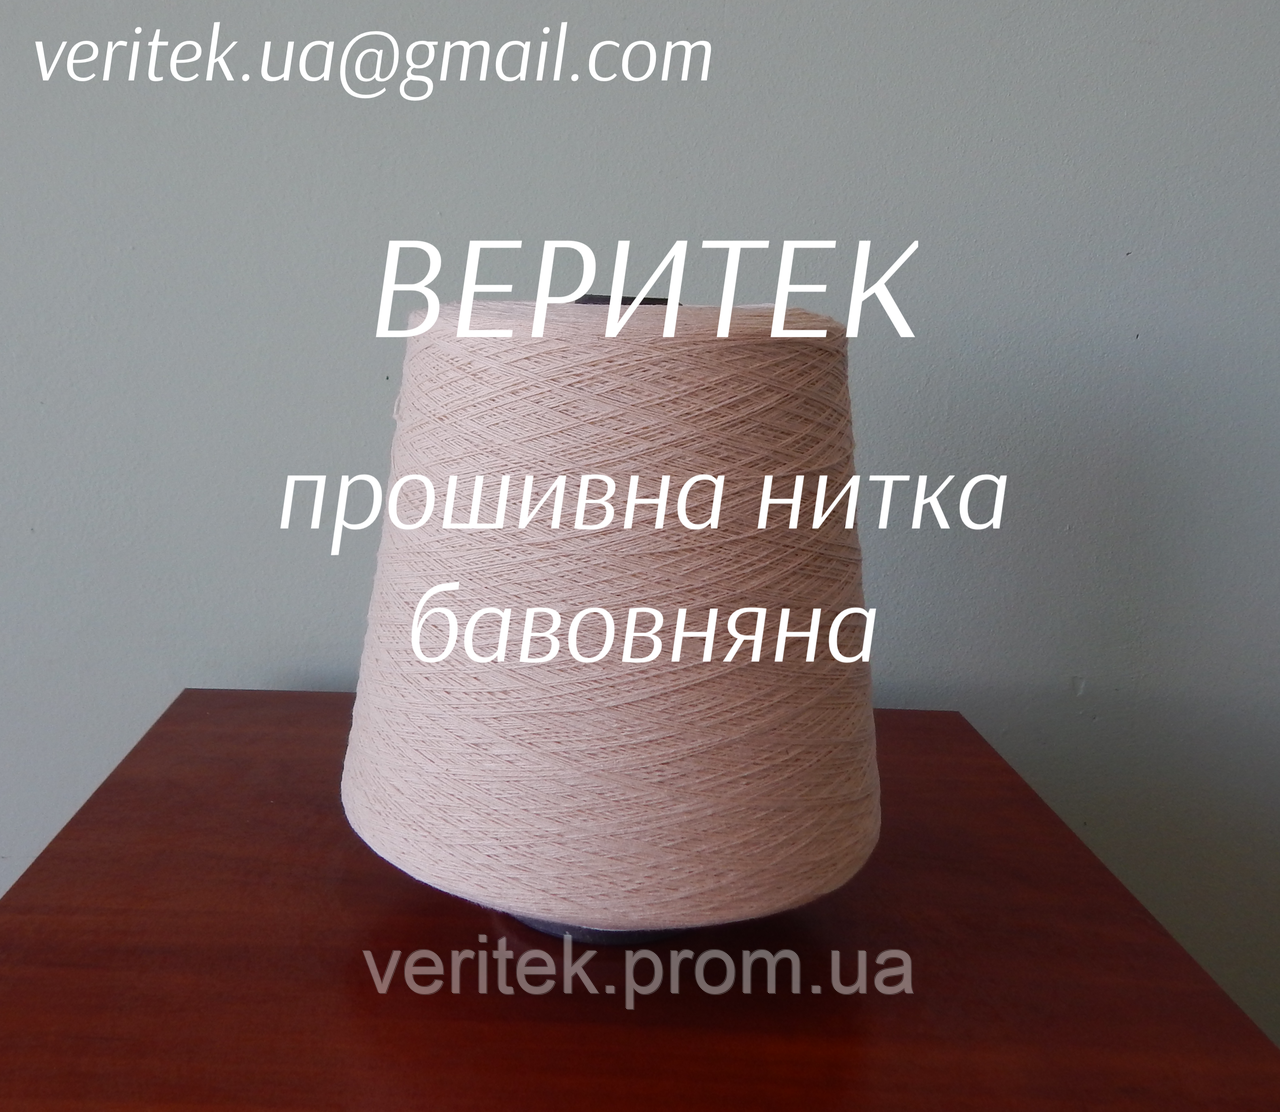 Прошивна нитка бавовняна  (доступні під замовлення на сайті veritek.prom.ua або за тел.0675721597)